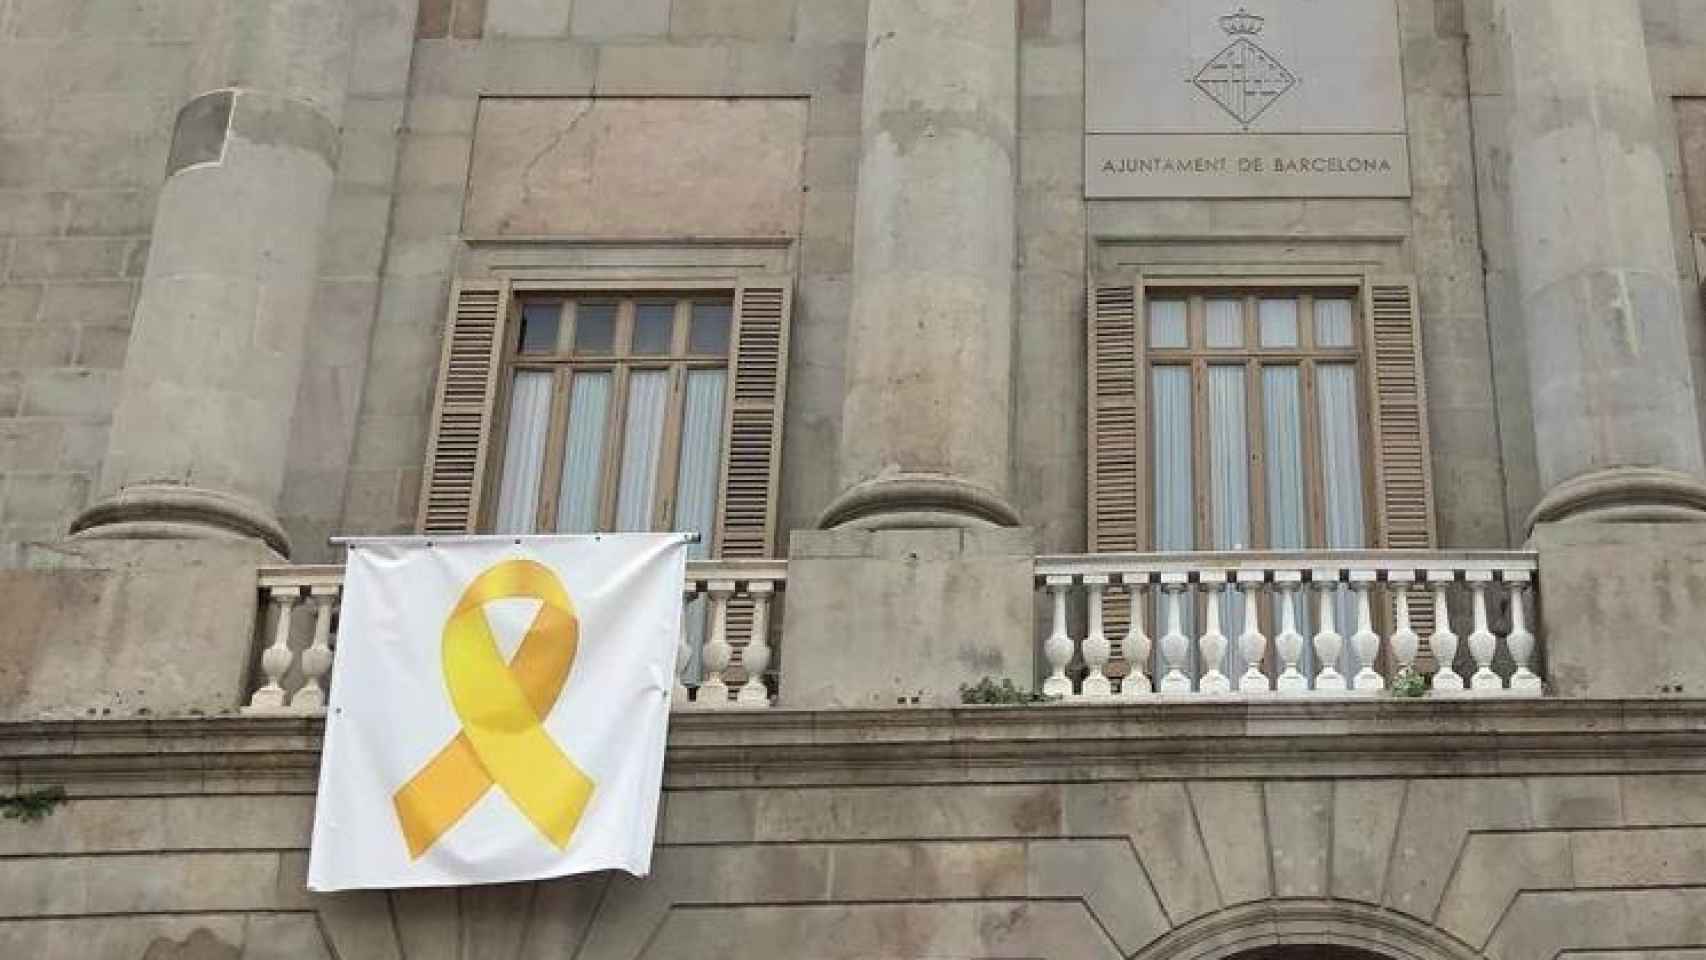 La fachada del Ayuntamiento del Barcelona